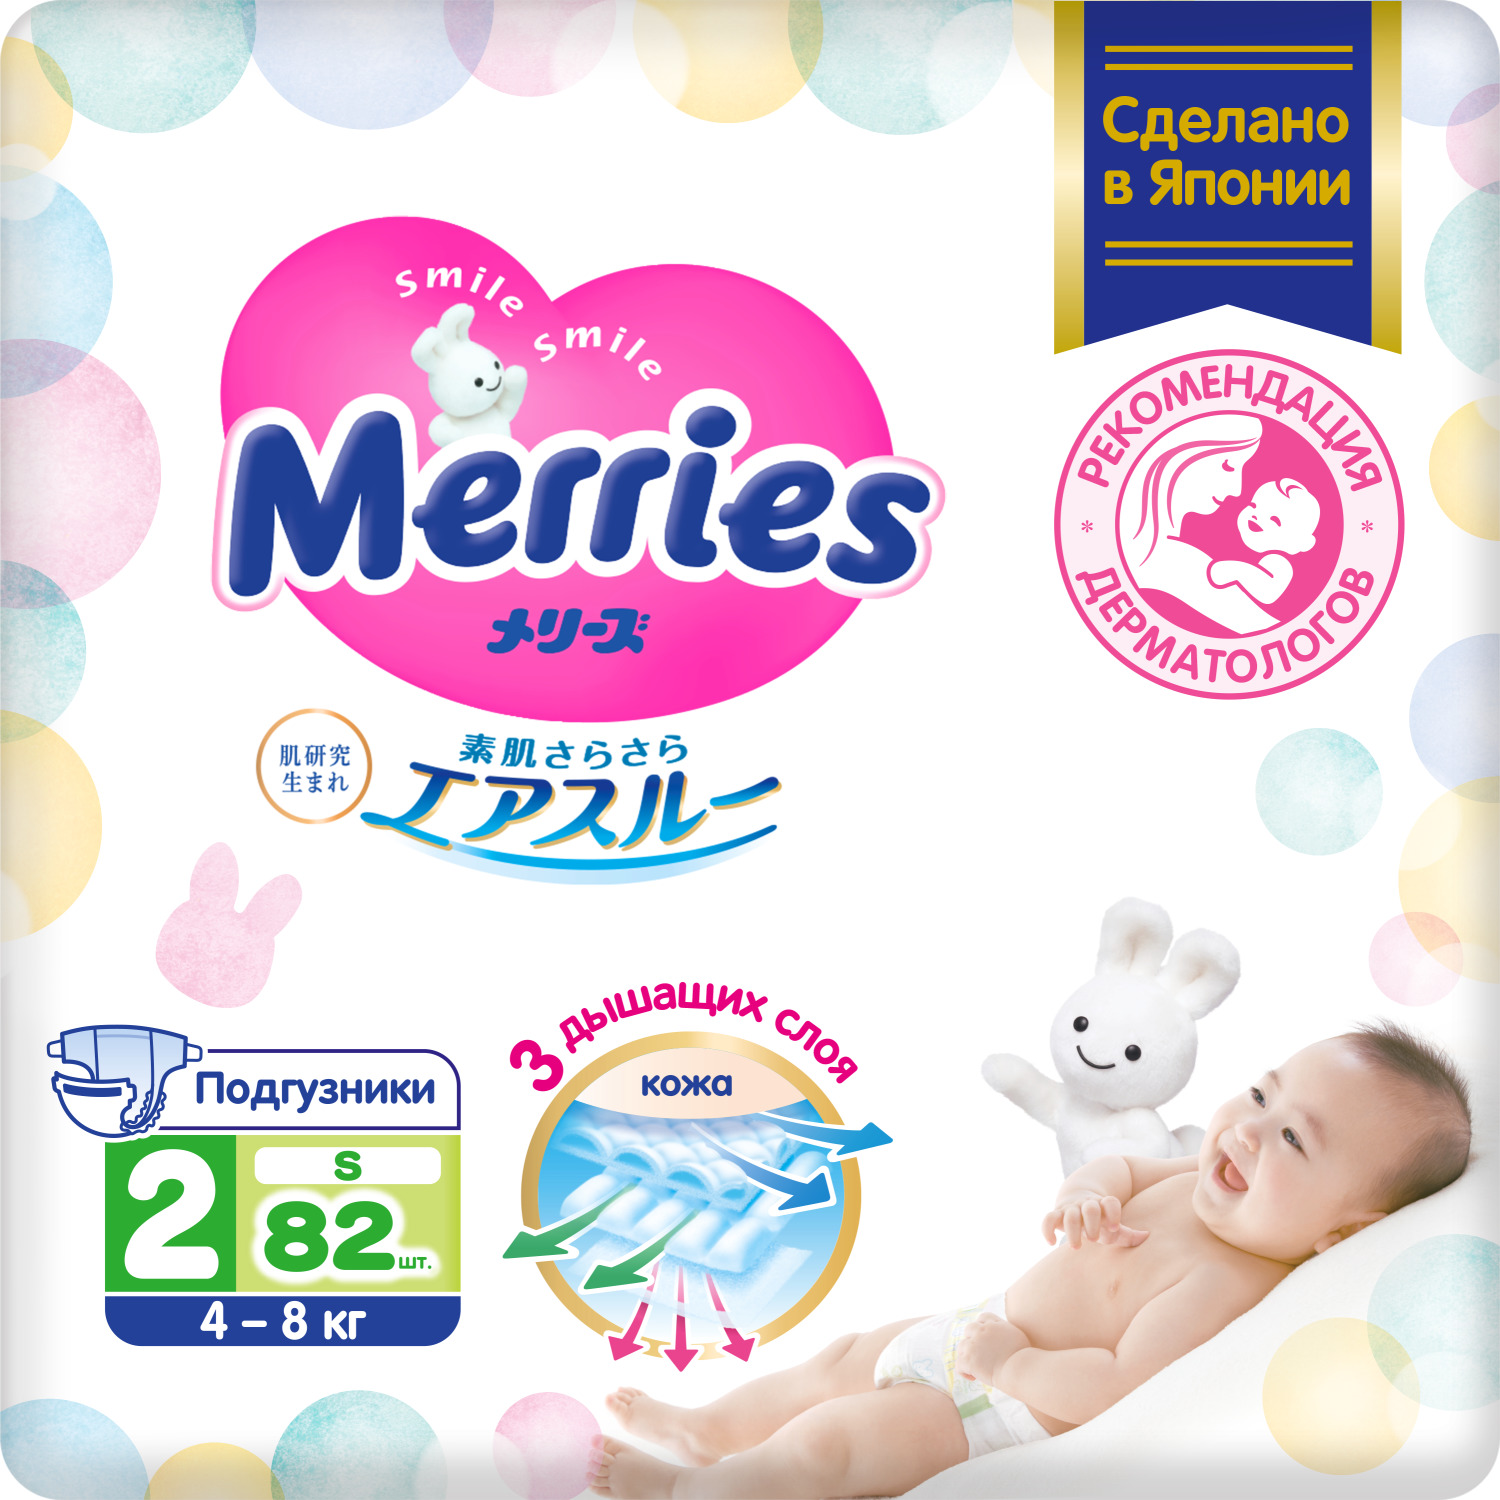 Подгузники Merries для детей размер S 4-8 кг, 82 шт фото